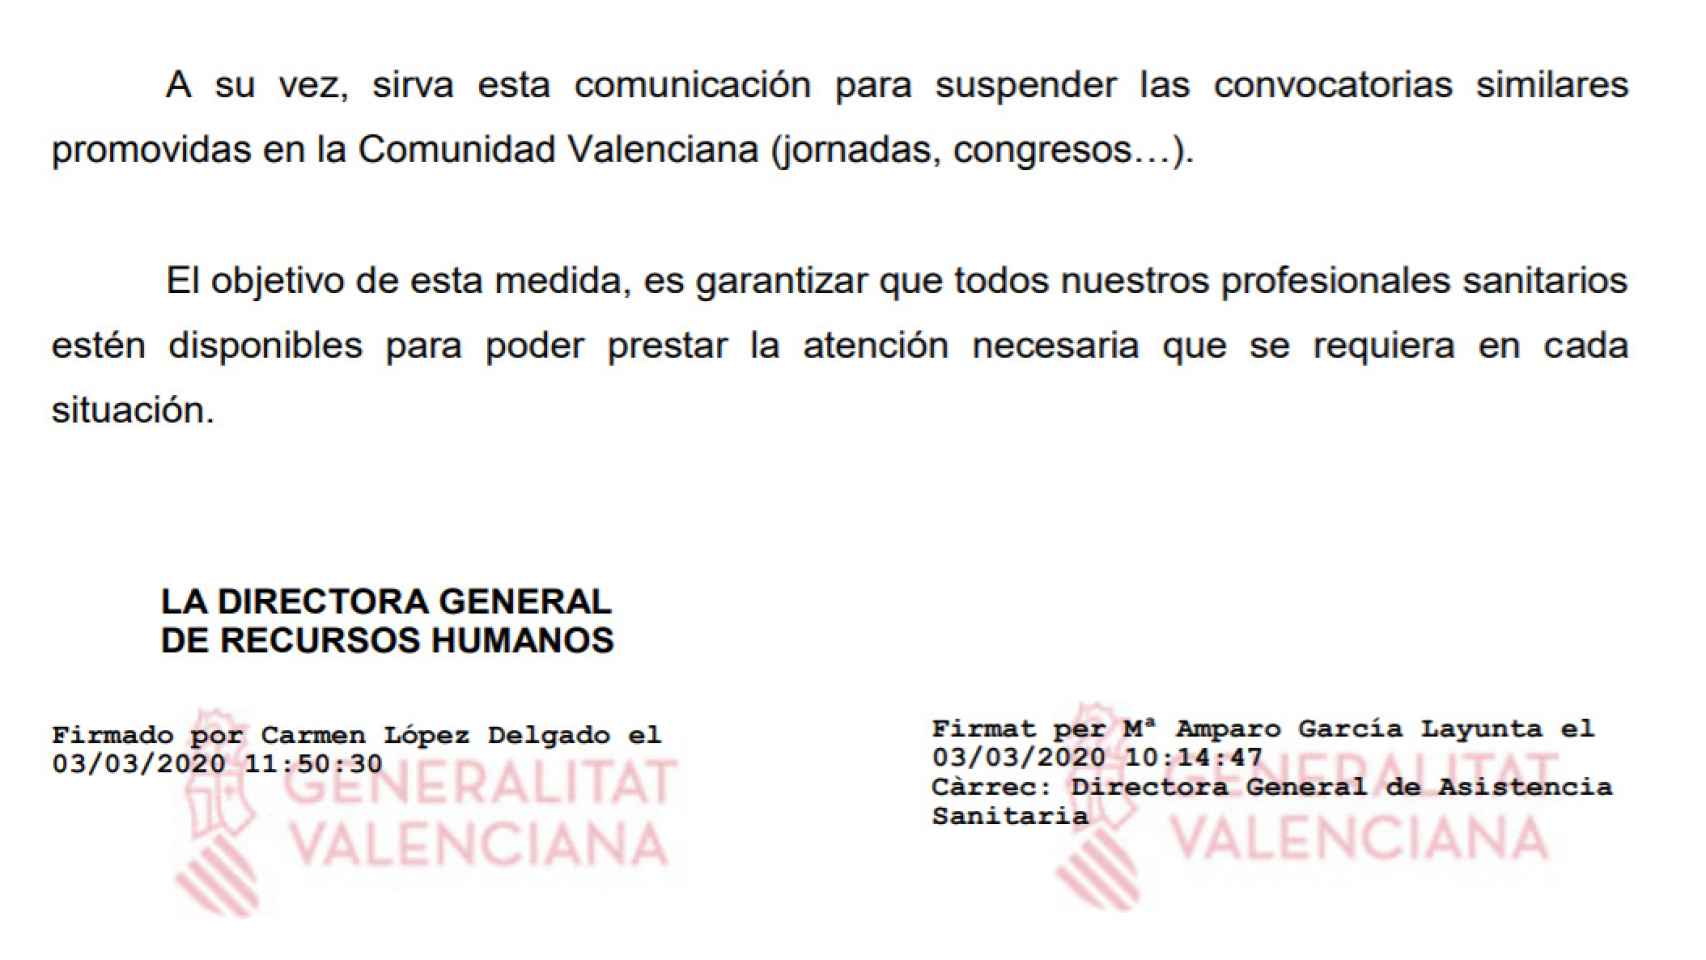 Recorte de la nota informativa enviada por la Generalitat valenciana a sus médicos el 3 de marzo de 2020.